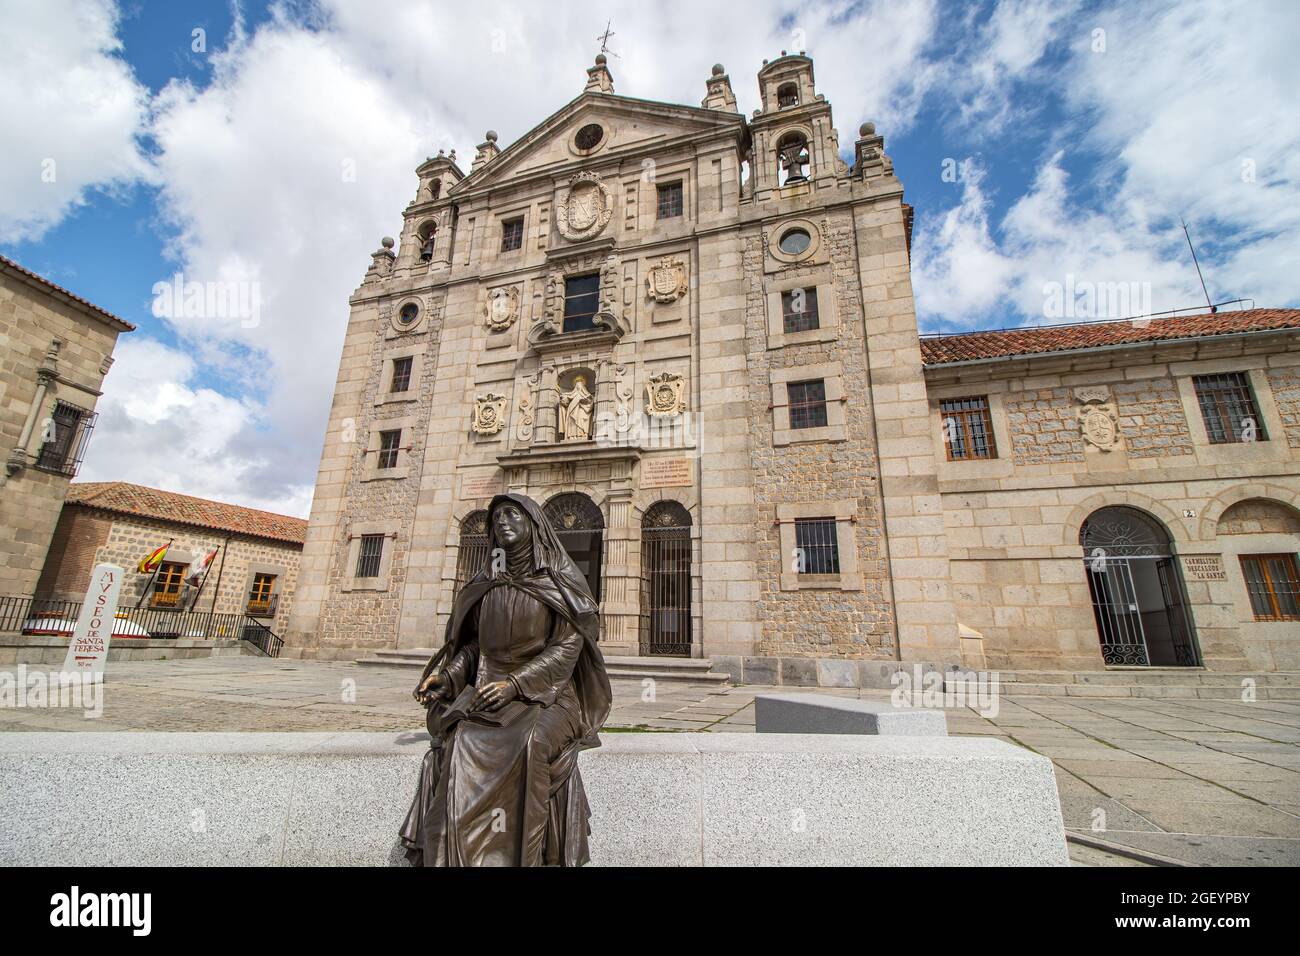 Avila, Espagne - 9 septembre 2017 : image de Santa Teresa de Jesús devant l'église - couvent de Santa Teresa. Bâtiment construit dans le lieu de naissance, d Banque D'Images